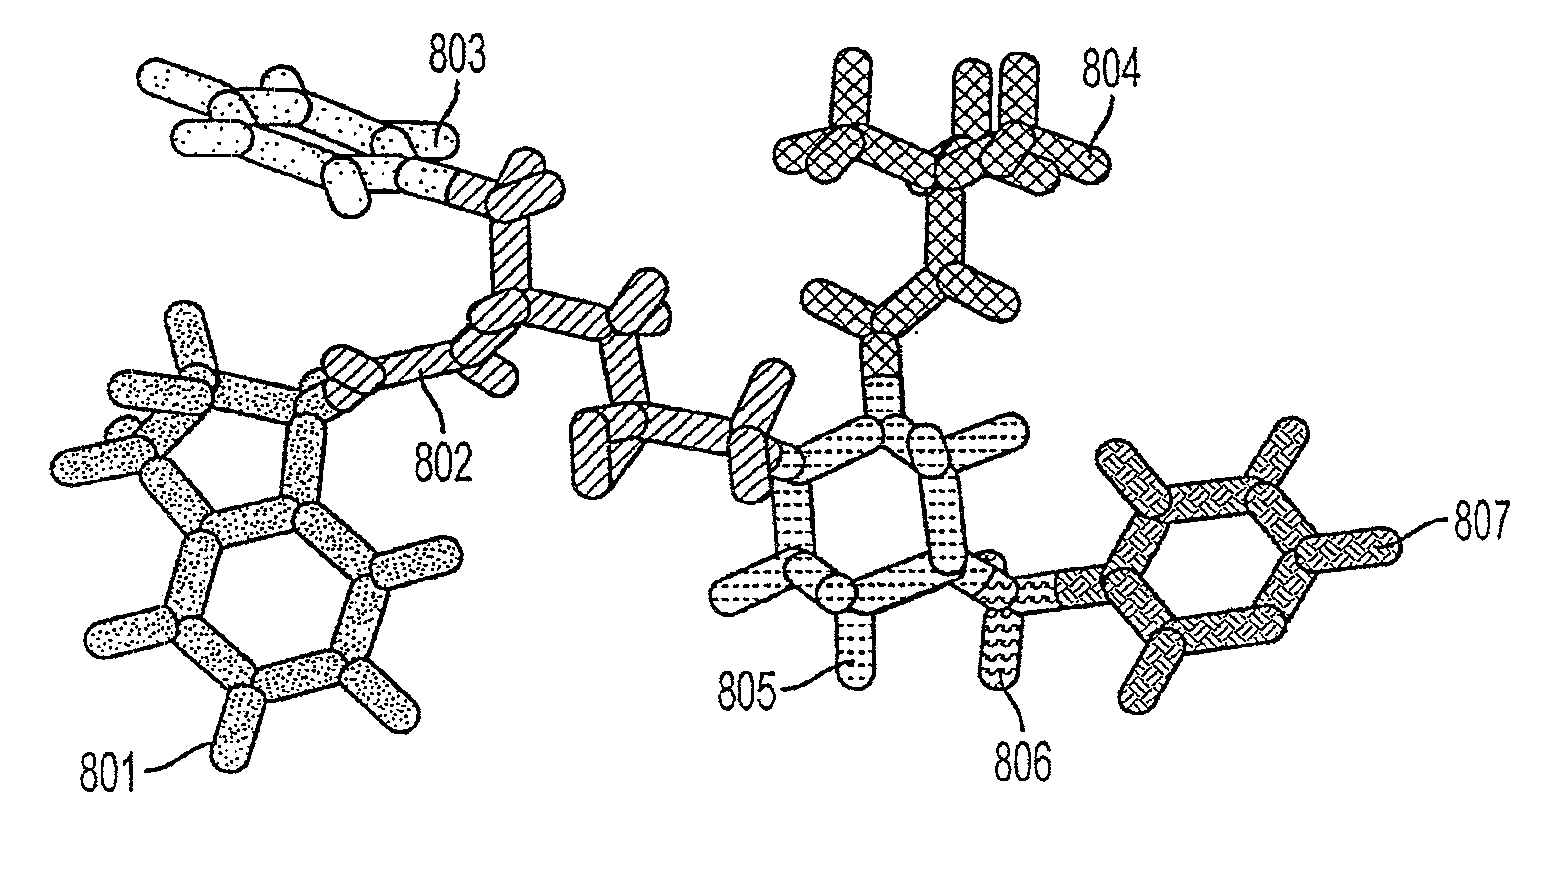 Computer Aided Ligand-Based and Receptor-Based Drug Design Utilizing Molecular Shape and Electrostatic Complementarity